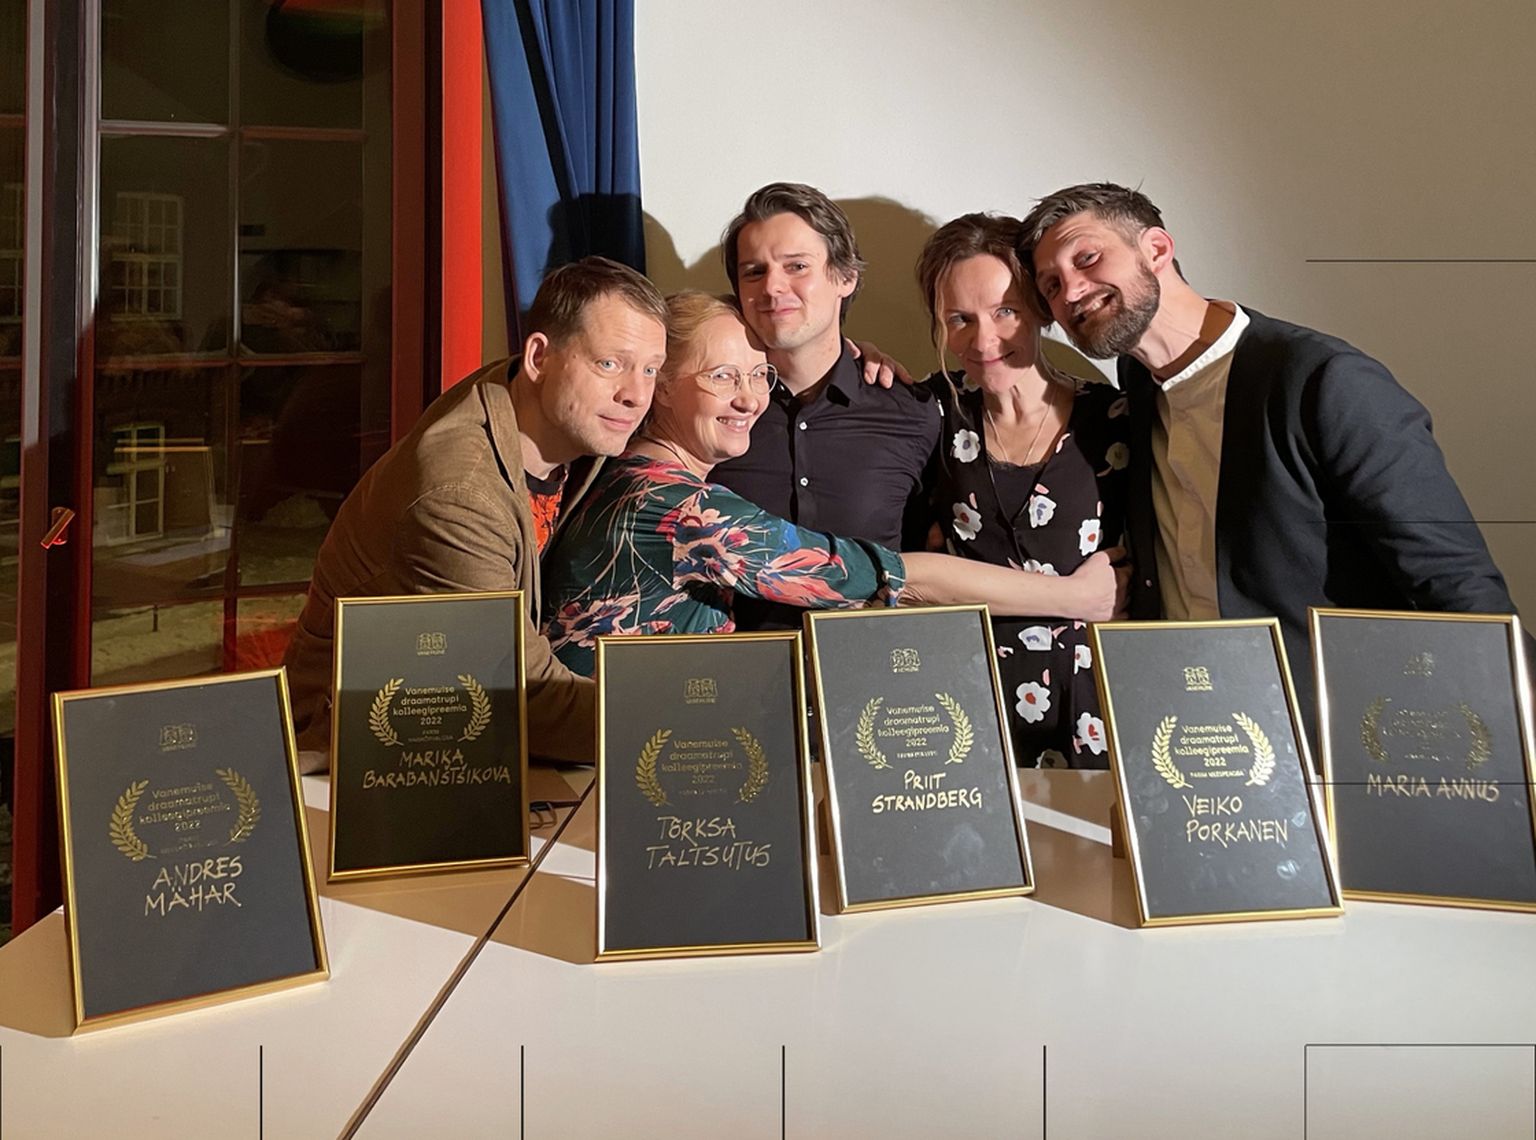 Vanemuise draamatrupi kolleegipreemiad said Andres Mähar, Marika Barabanštšikova, Priit Strandberg, Maria Annus ja Veiko Porkanen.